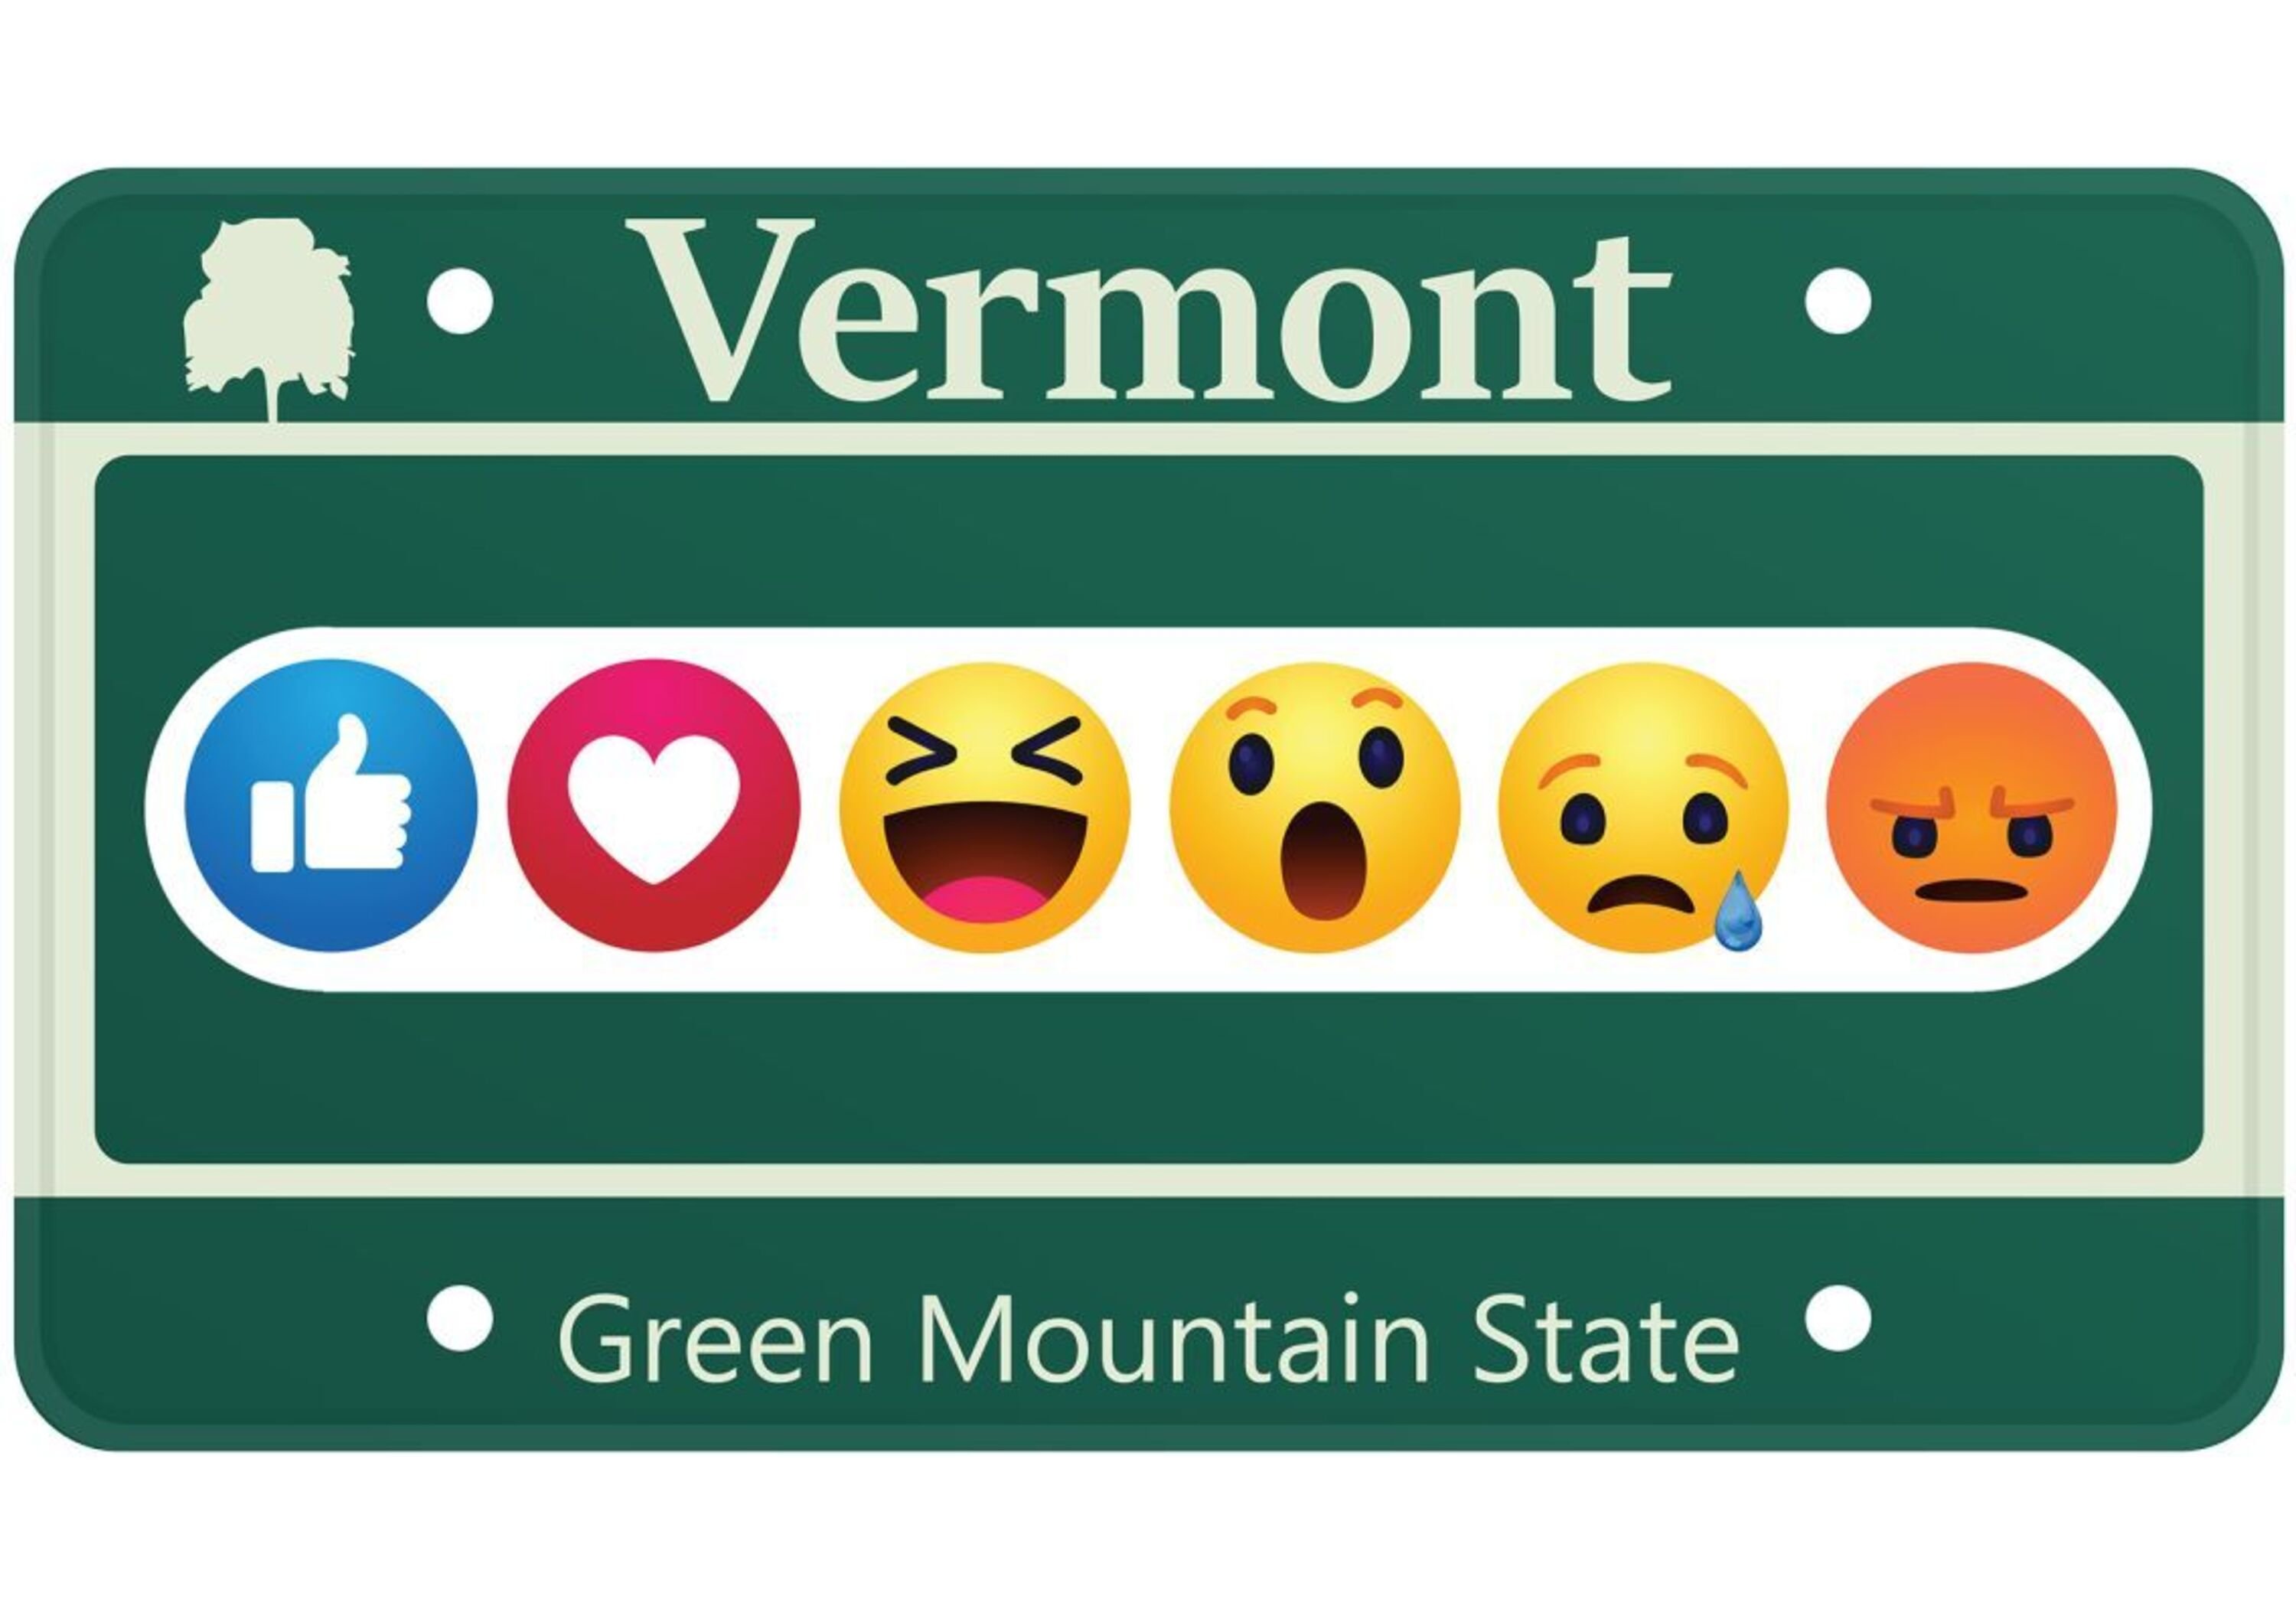 Targhe personalizzate: in Vermont arrivano le emoticon